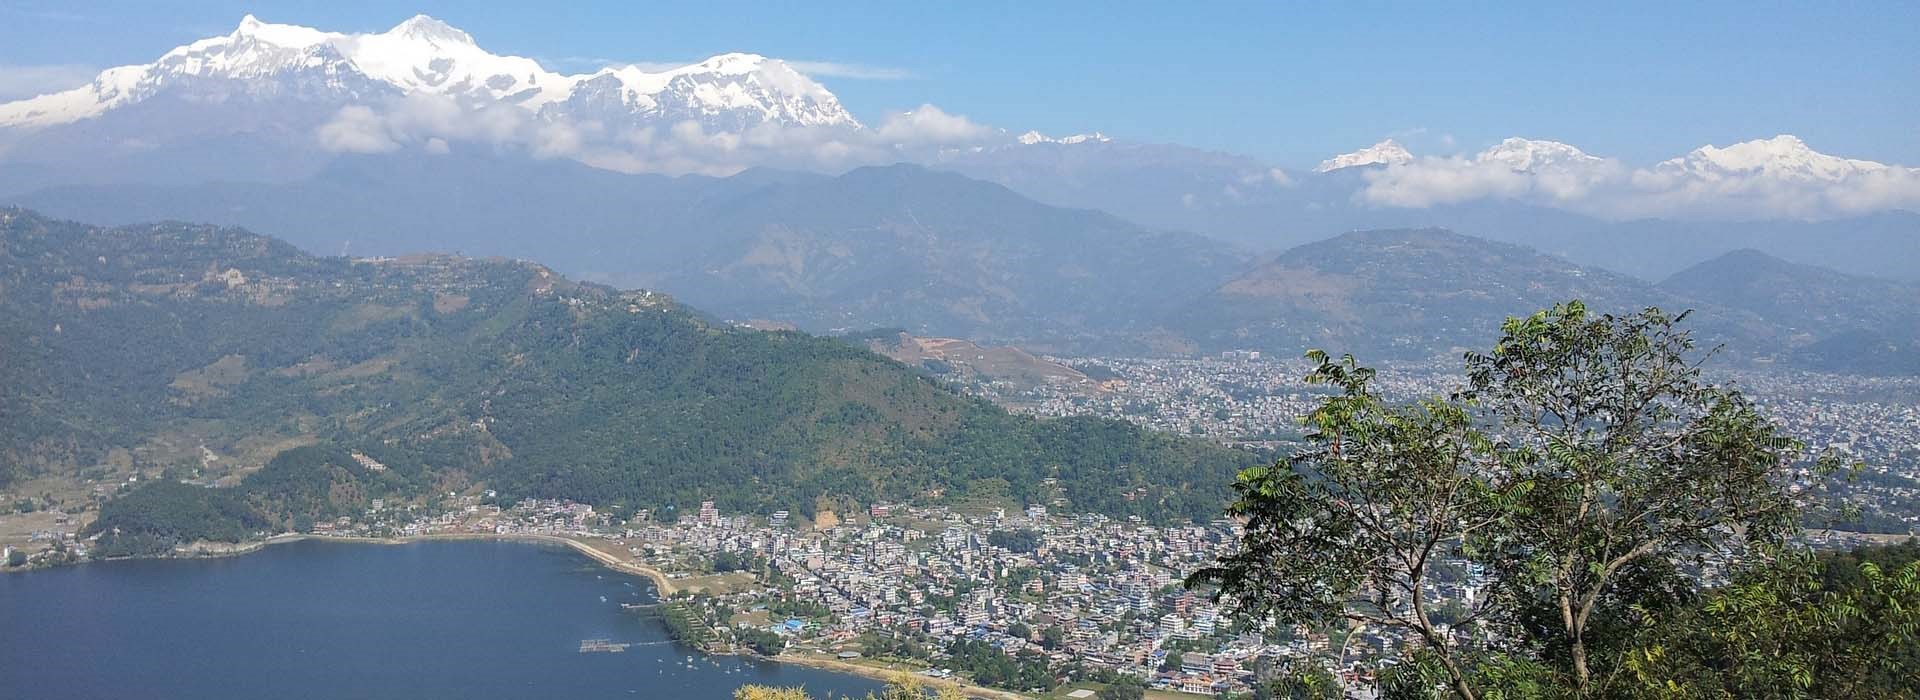 Visiter Le Belvédère de Sarangkot - Népal